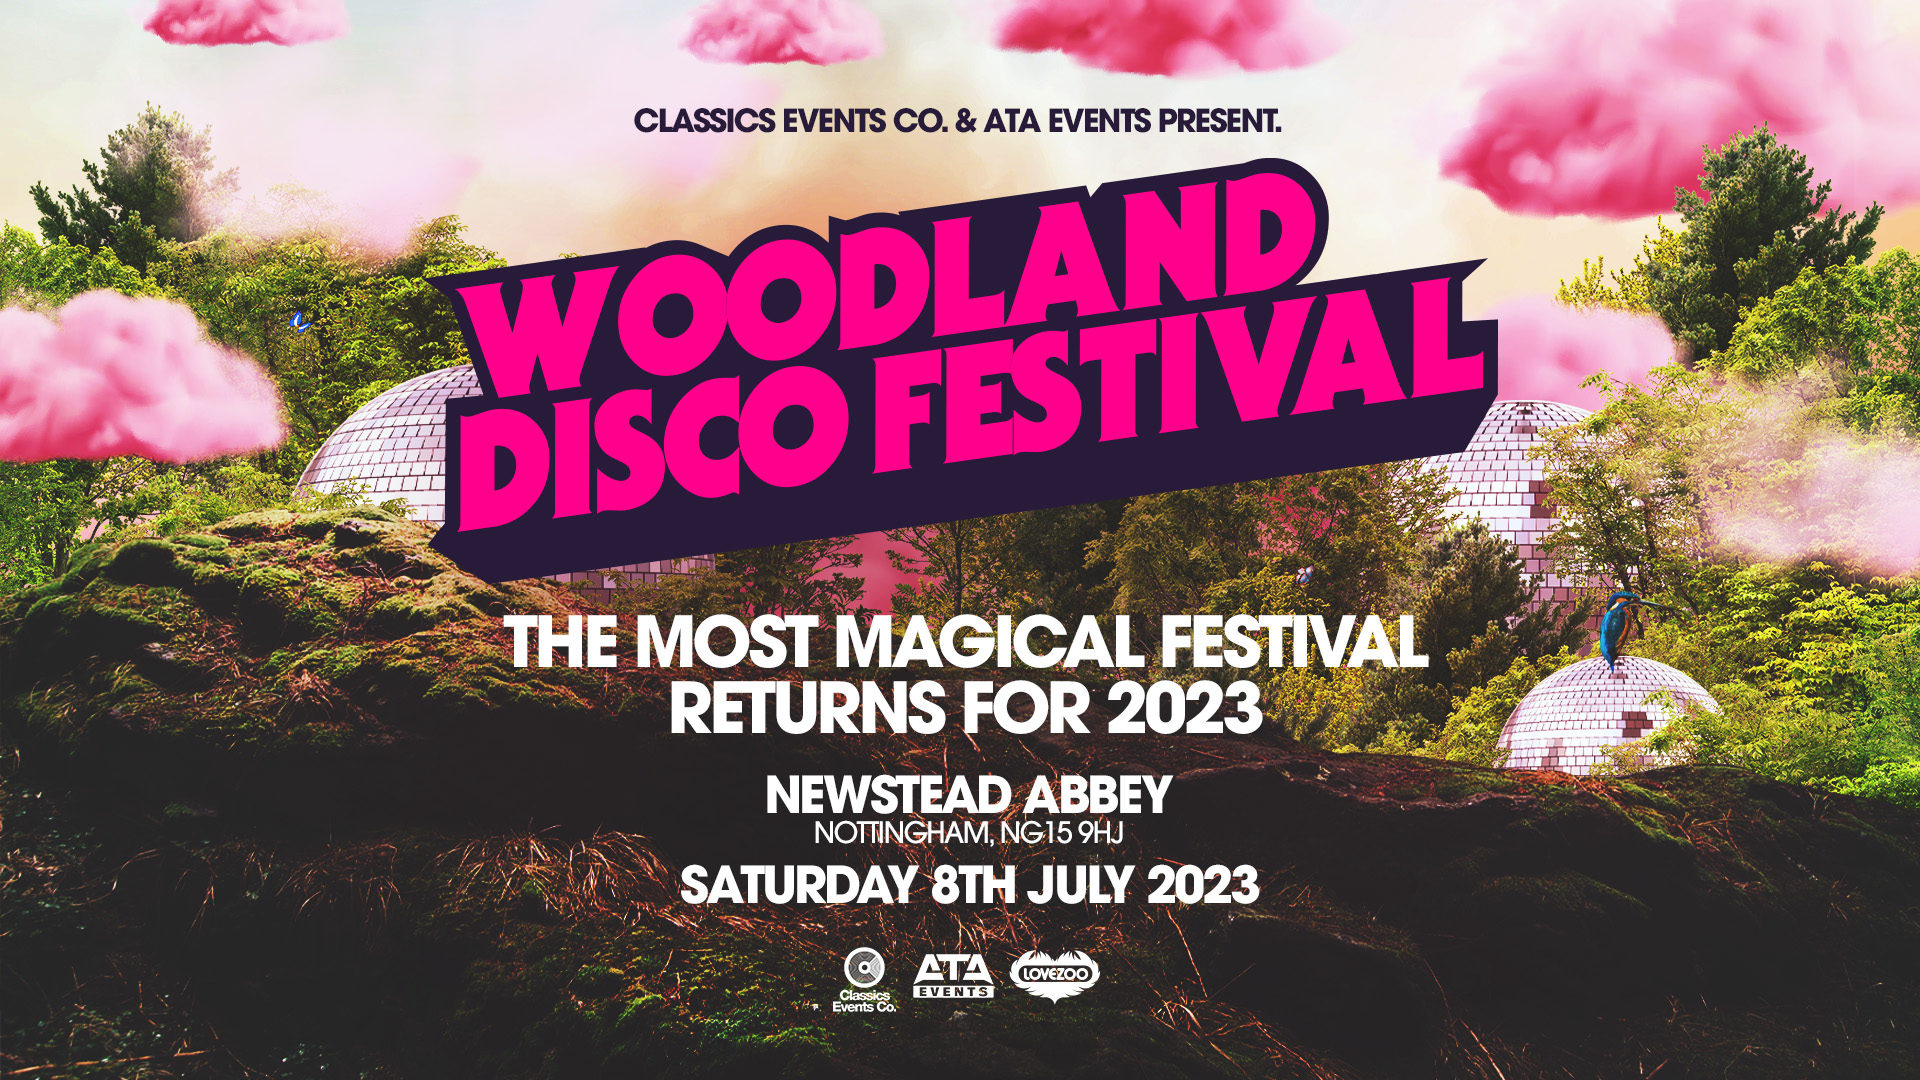 Woodland Disco Festival Saturday 8th July 2023 Newstead Abbey